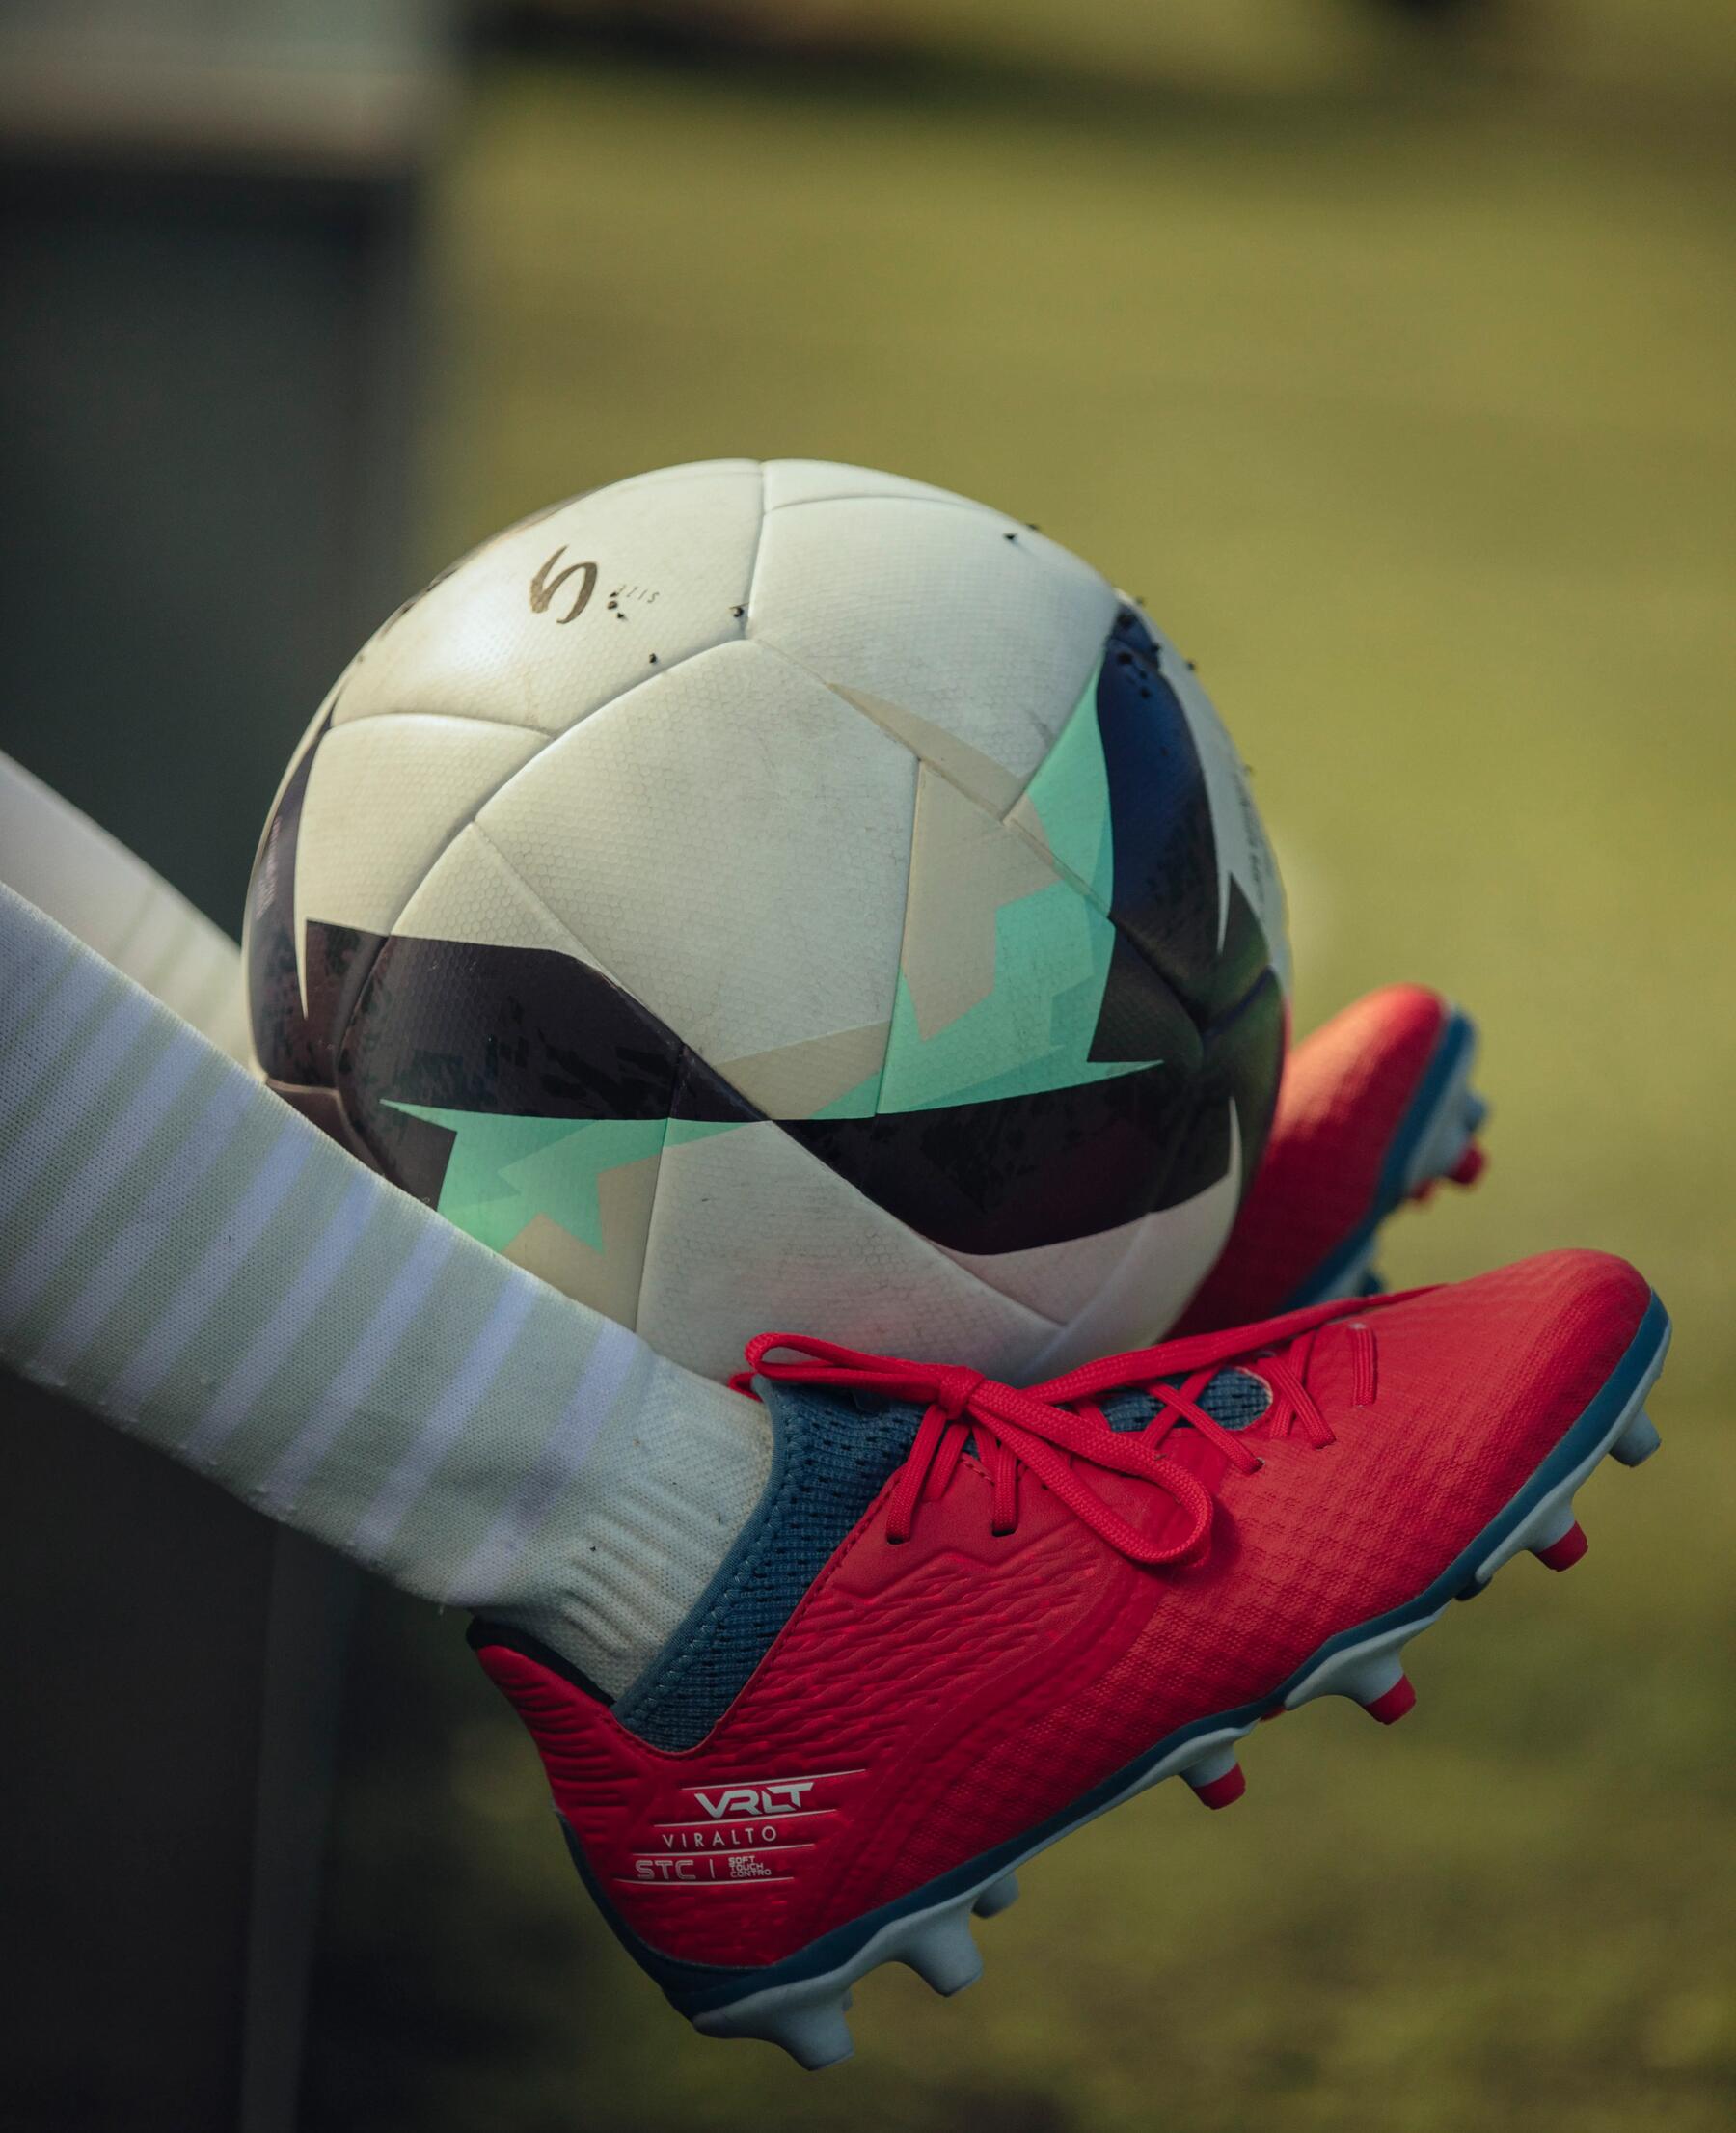 5 cosas que tienes que tomar en cuenta para comprar tu balón de fútbol